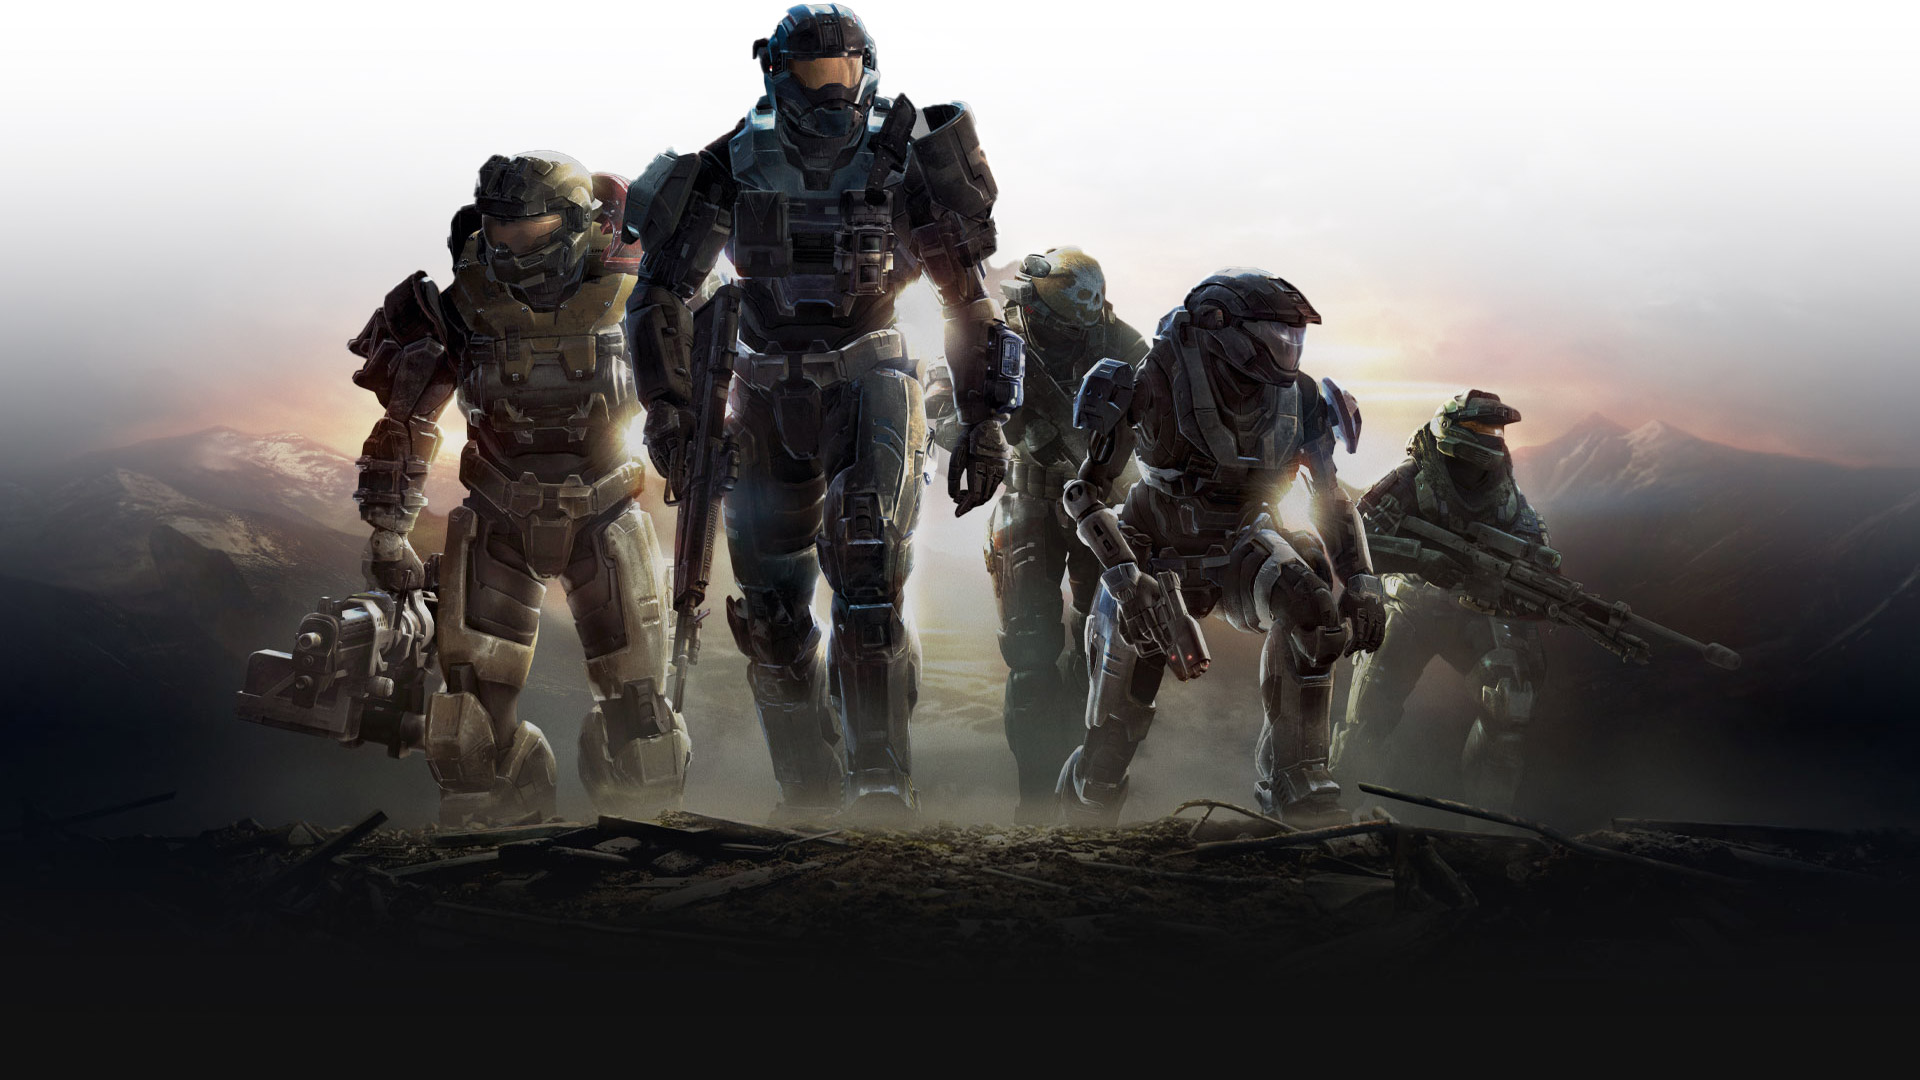 Spartans de Halo Reach sobem uma colina com armas prontas